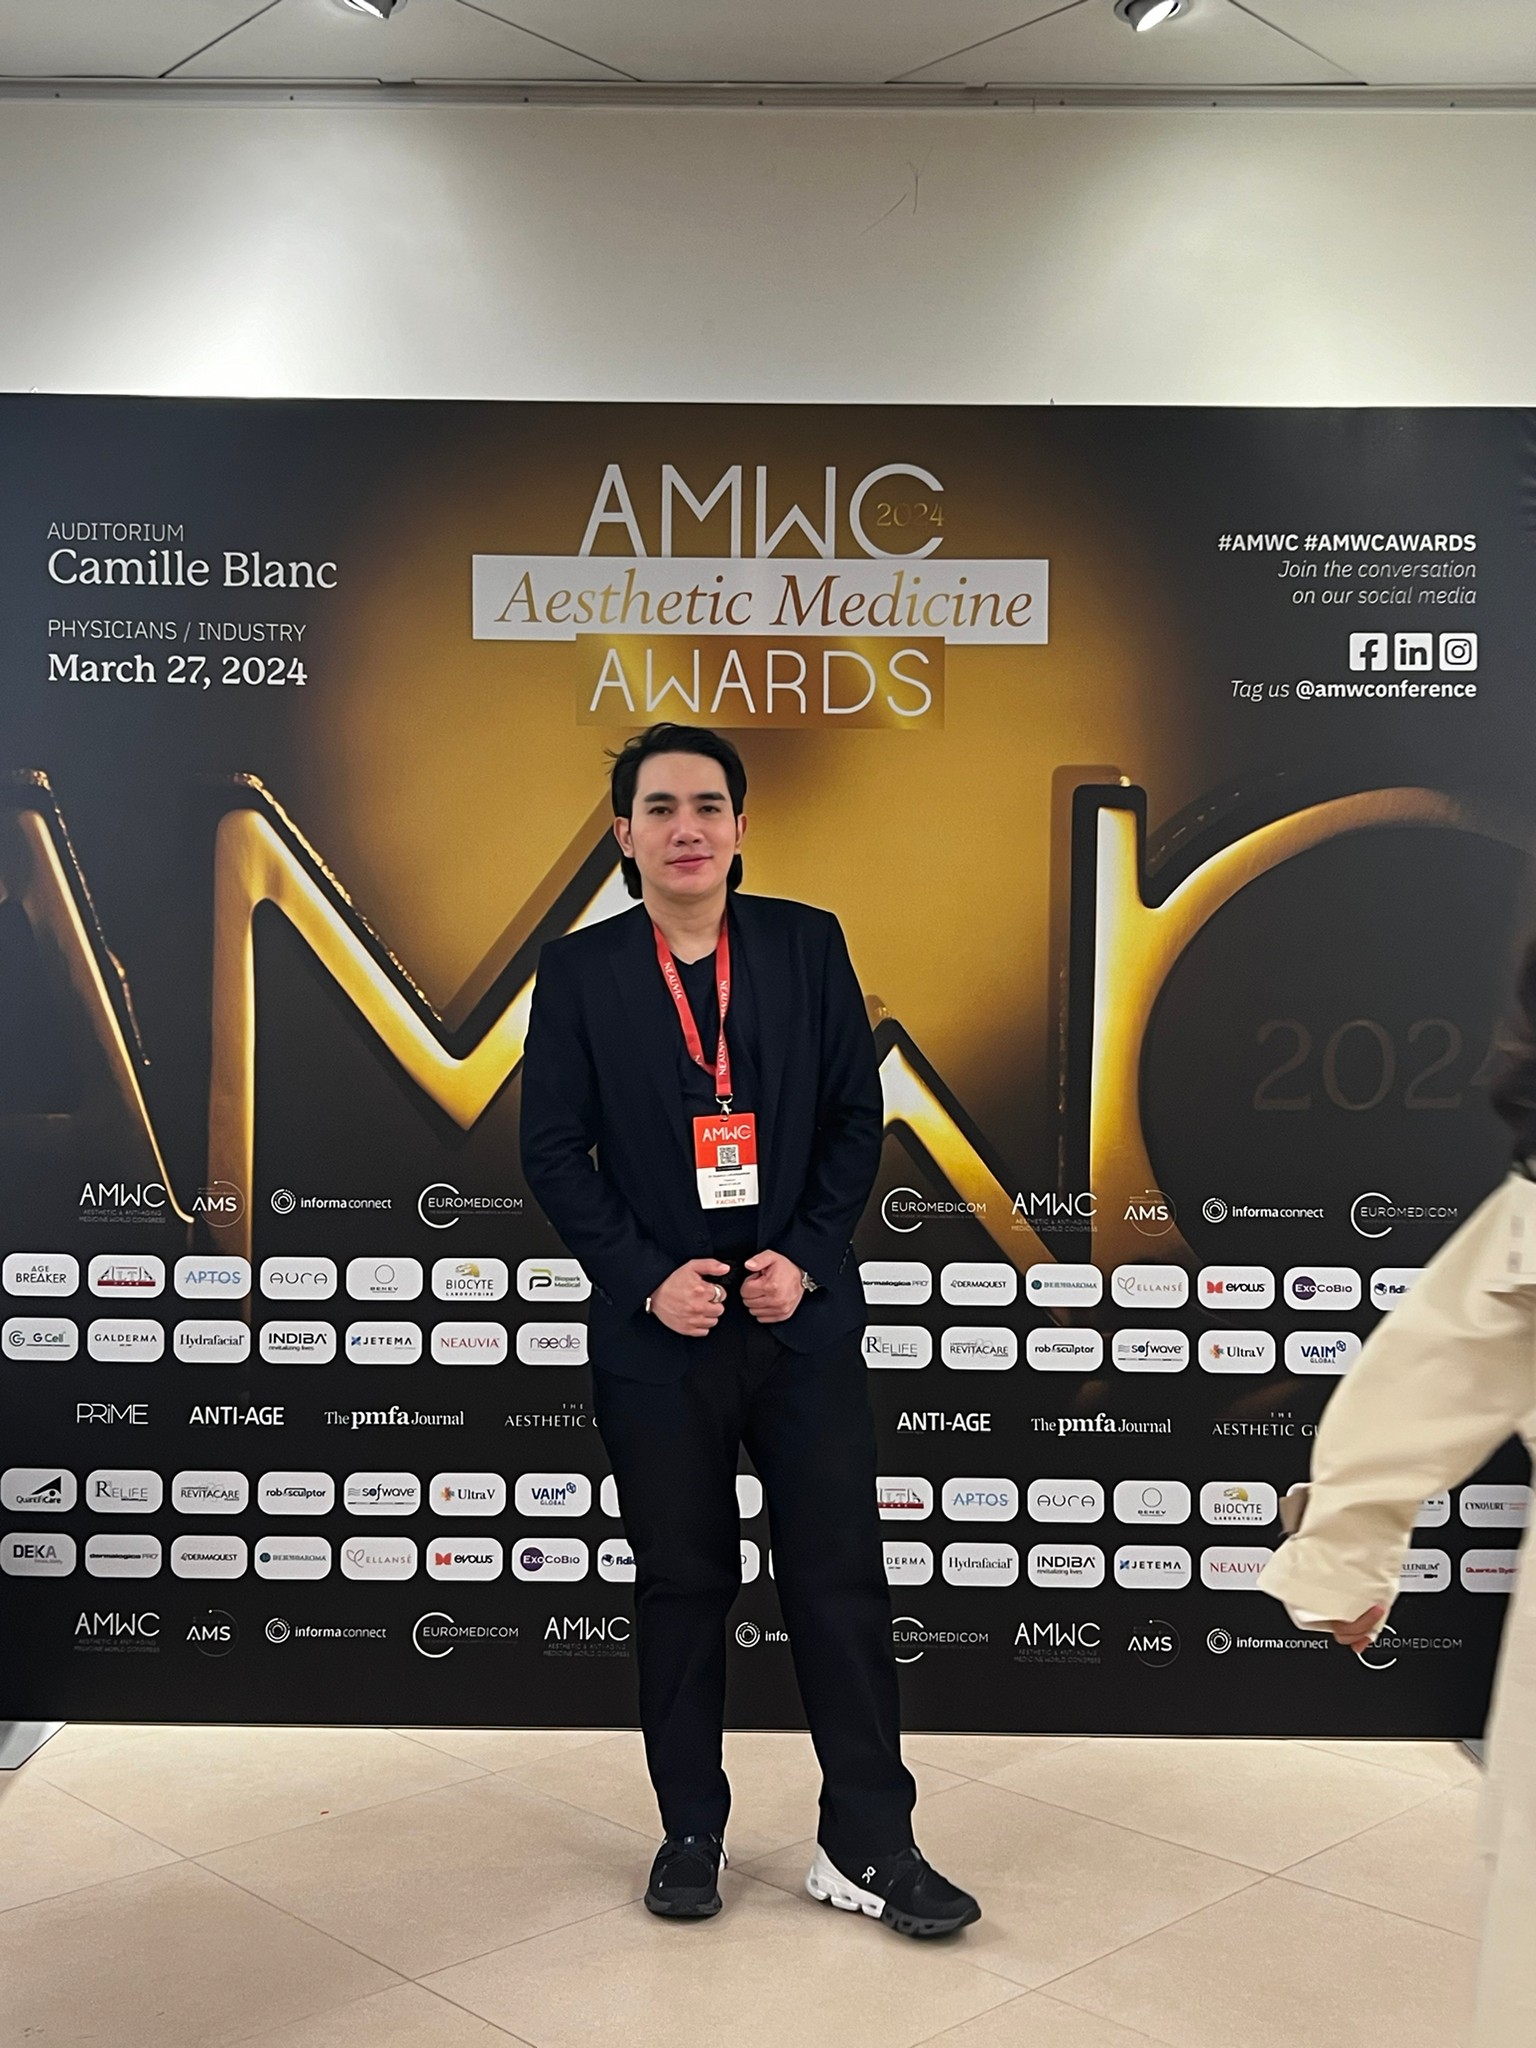 หมอรุจ ผศ. นพ. ศุภะรุจ เลื่องอรุณ แพทย์จากเอเชียหนึ่งเดียว เป็น 1 ใน Finalist จากงาน AMWC 2024 Monaco